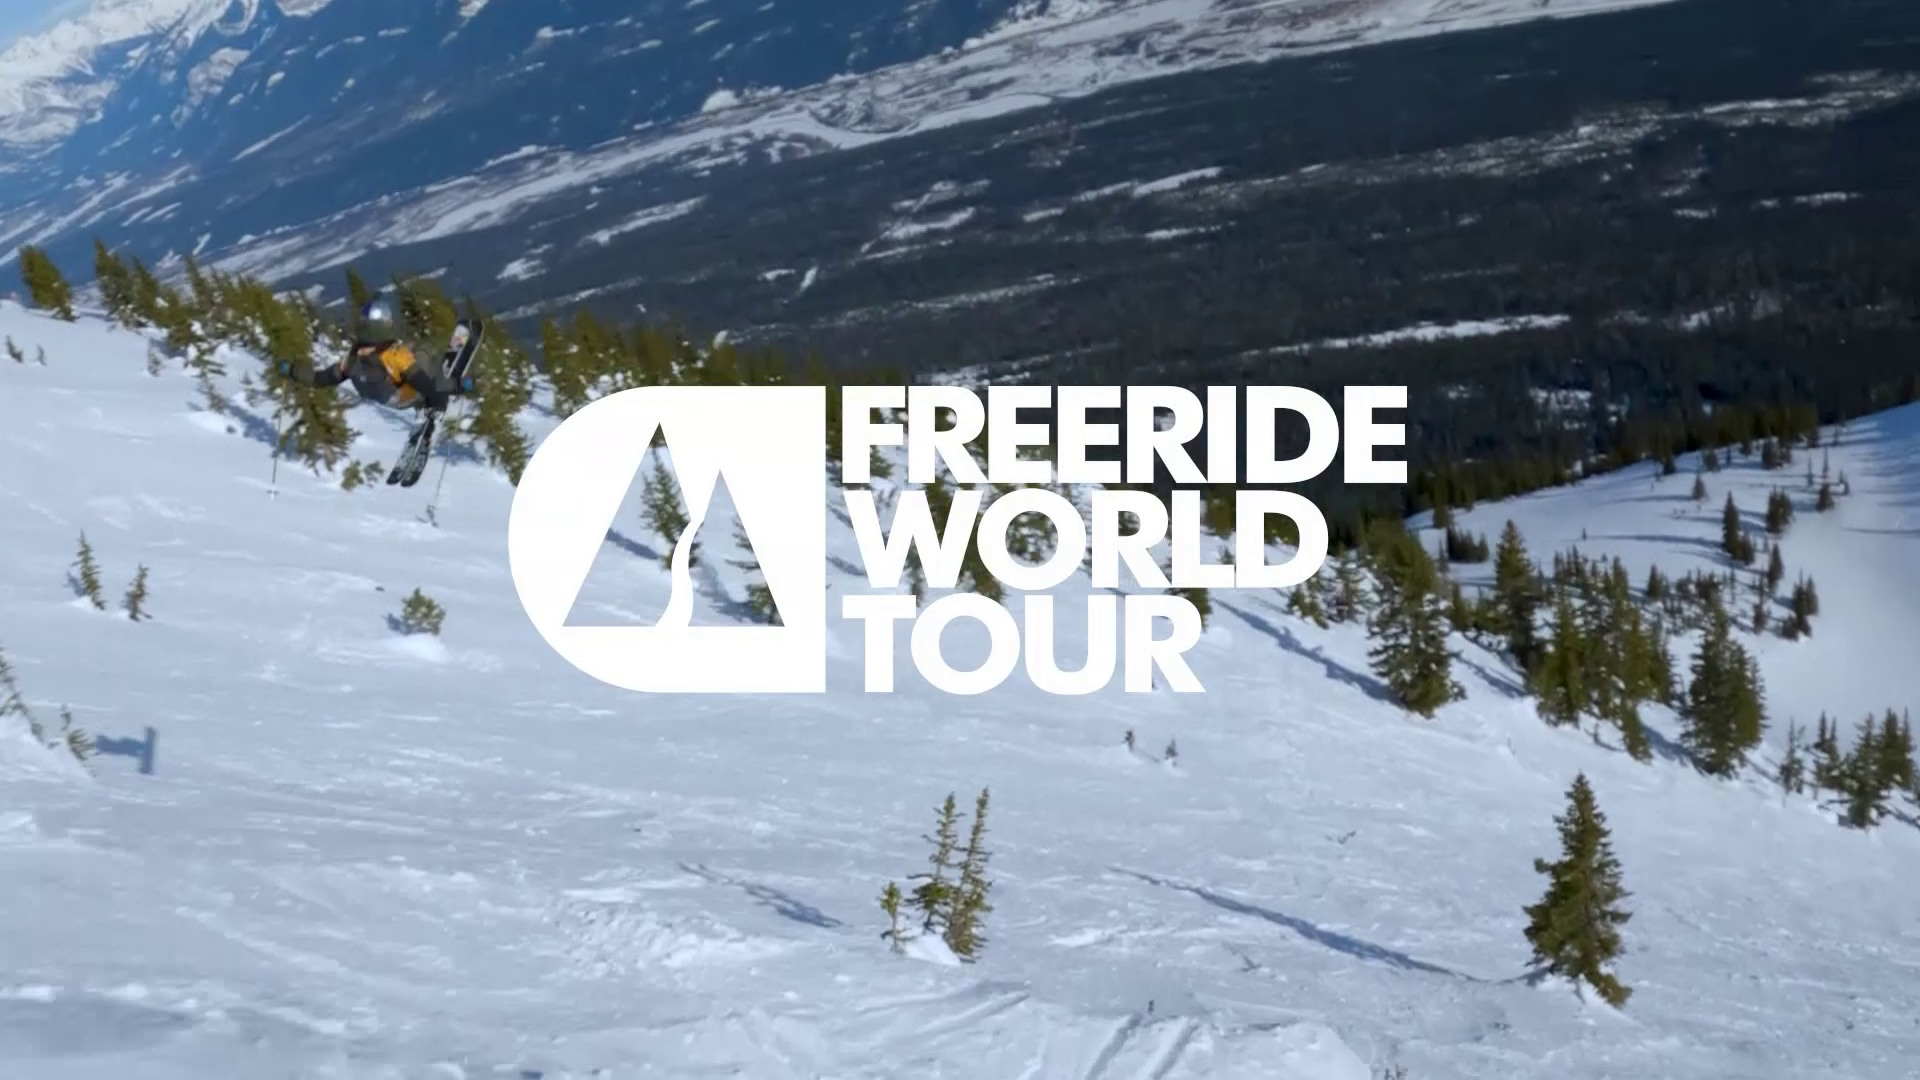 Cancel·lat el debut del Freeride World Tour a Baqueira Beret